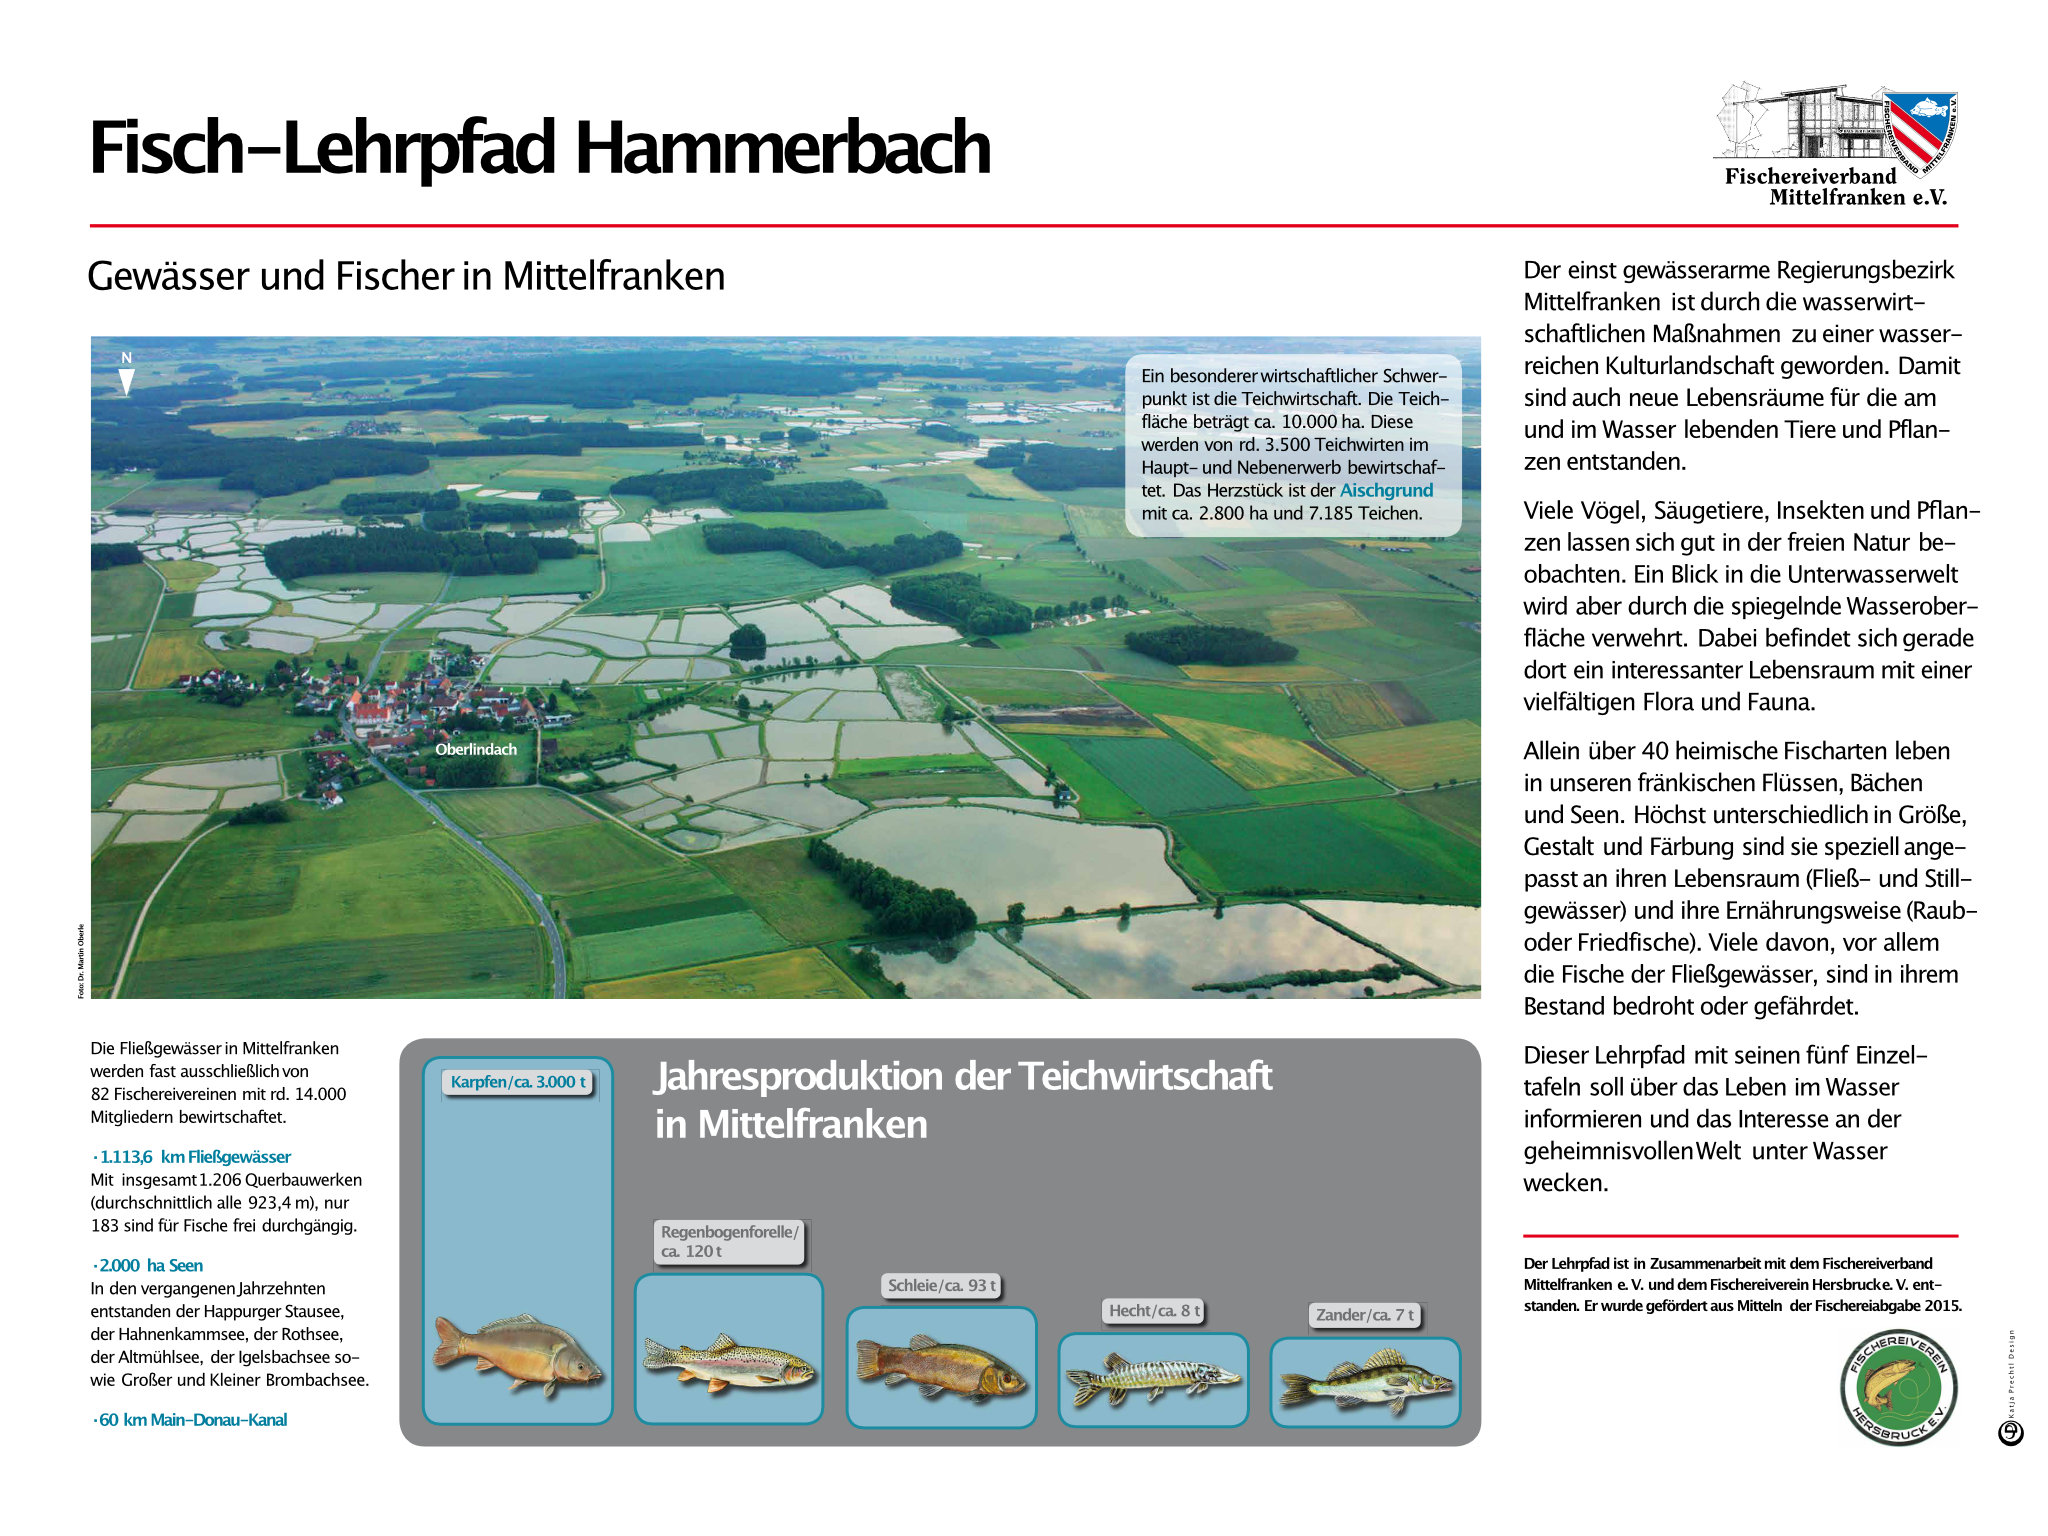 Fischerlehrpfad Hammerbach - Gewässer und Fischer Mittelfranken